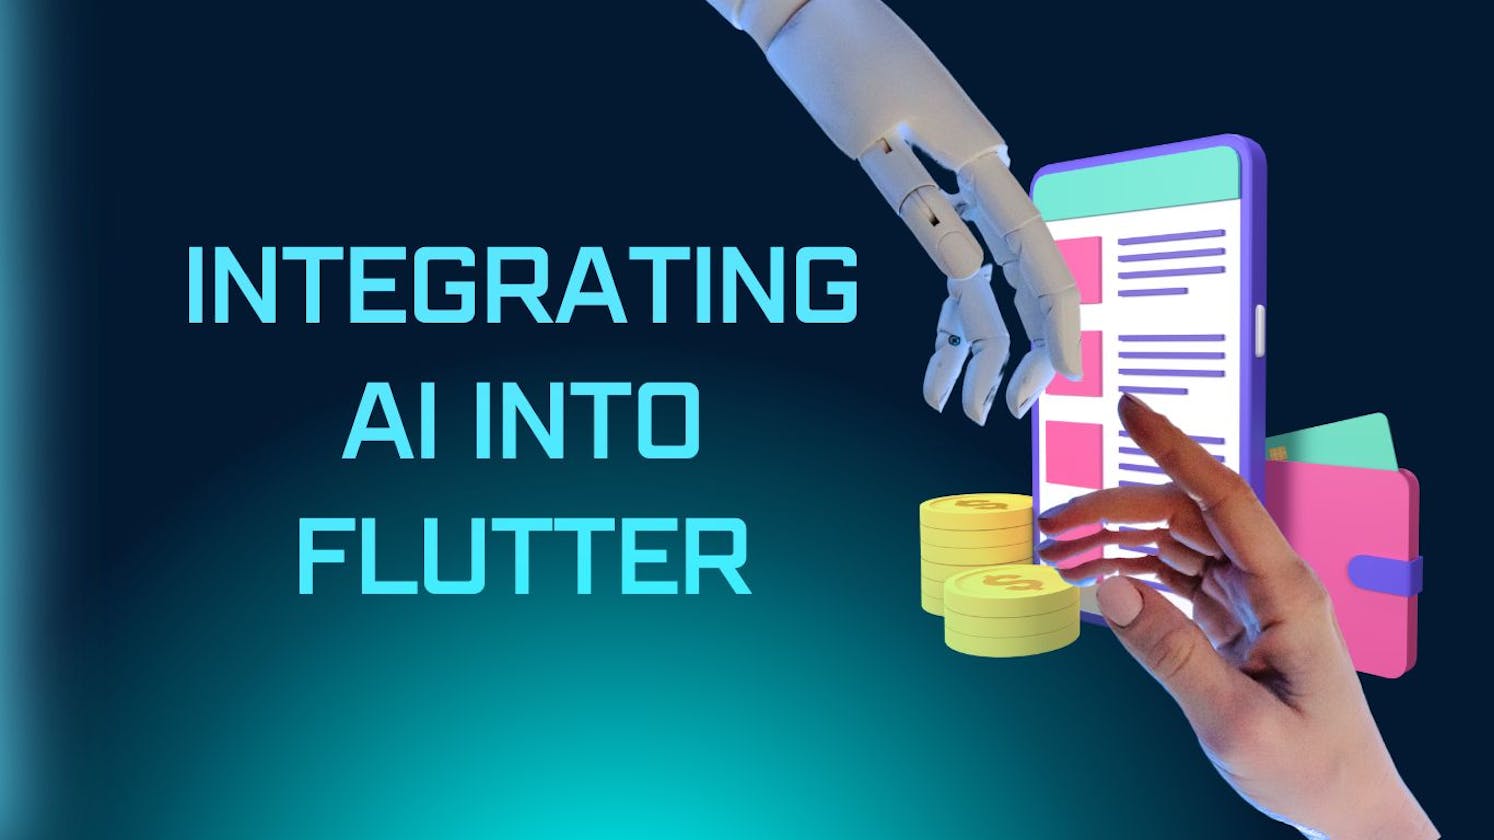 Integrating AI into Flutter: An Innovative Approach to App Development